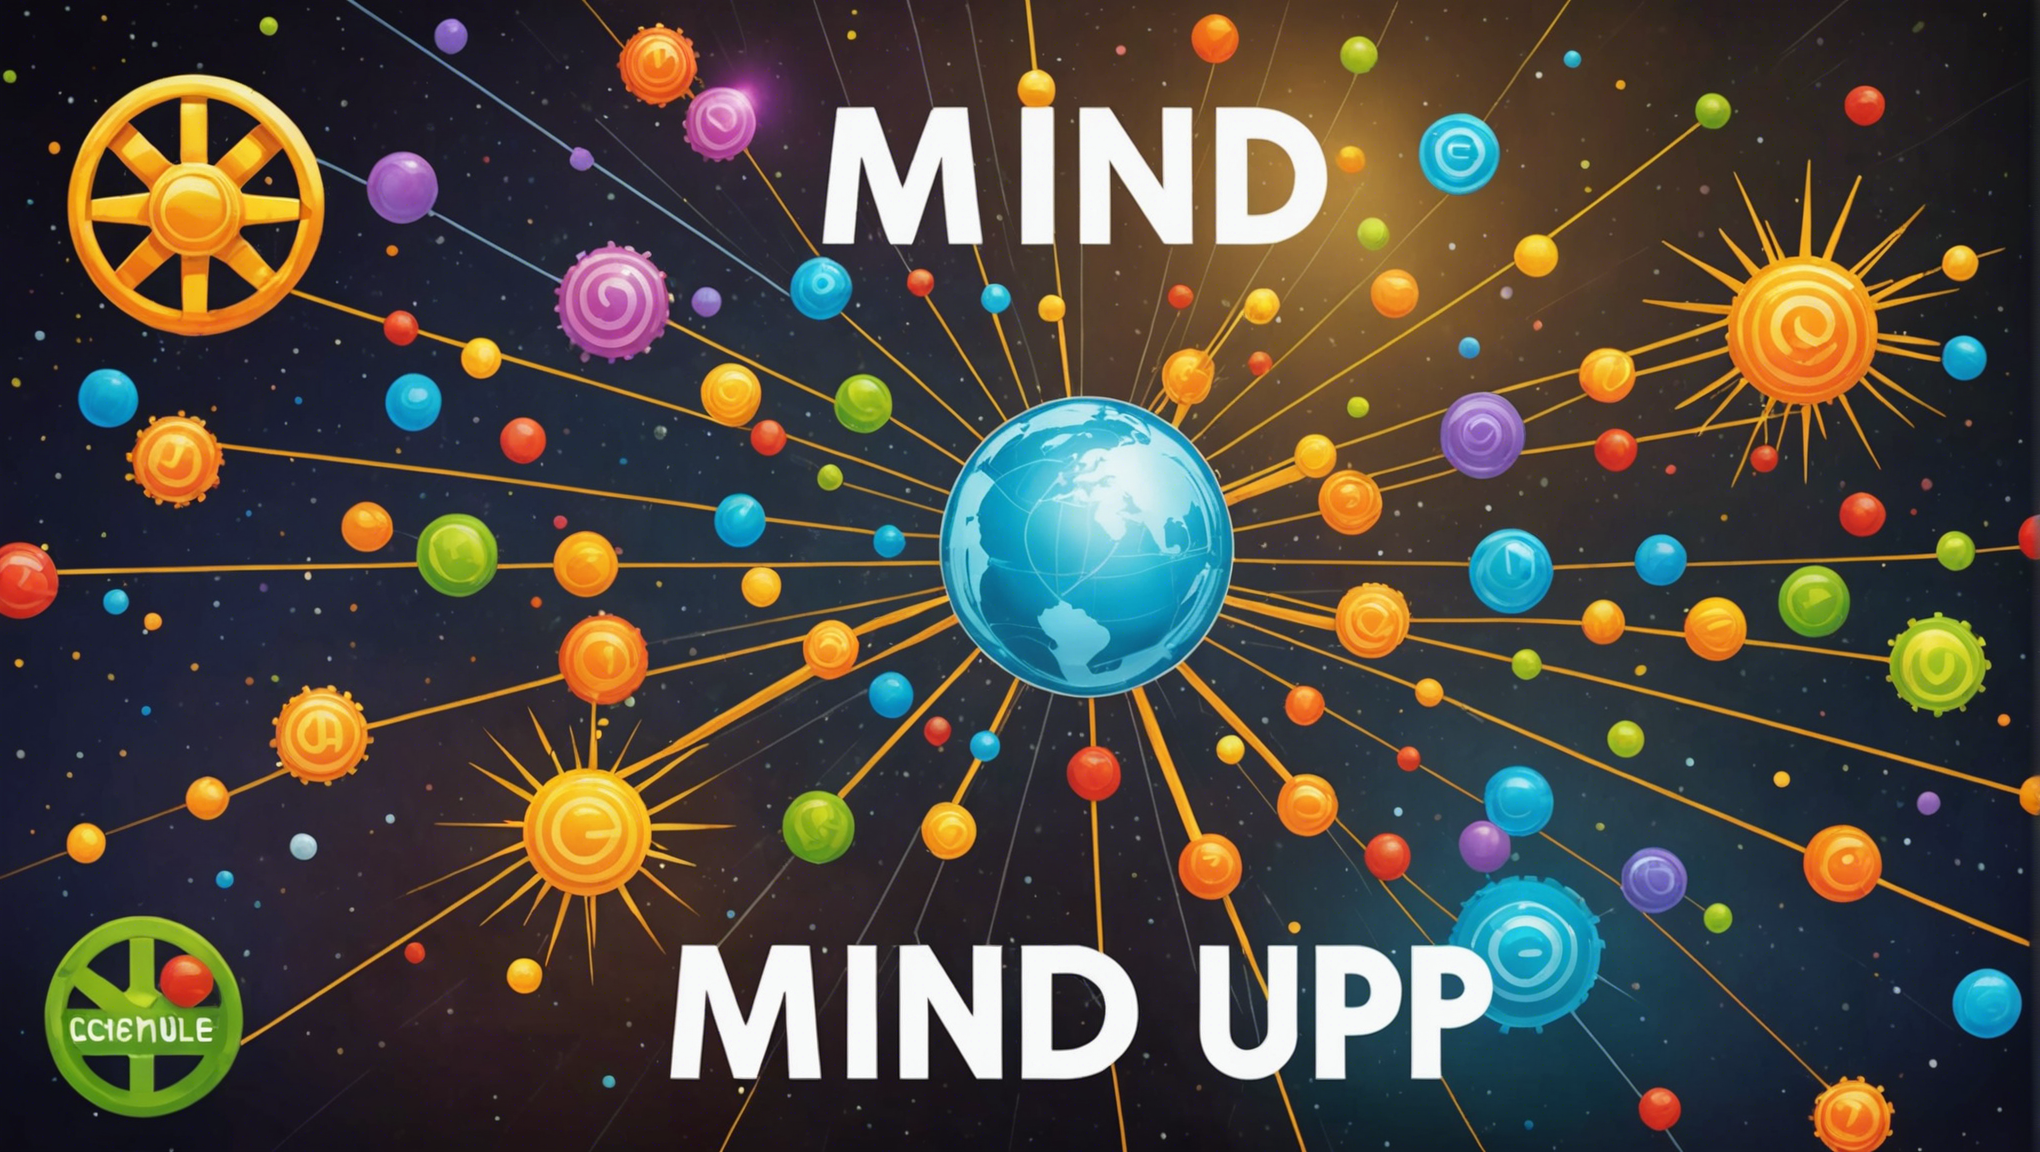 découvrez notre critique du jeu de société mind up ! : élévation cérébrale, un jeu passionnant qui vous fera réfléchir et stimulera votre esprit. apprenez-en plus sur ce jeu fascinant et ses défis mentaux.